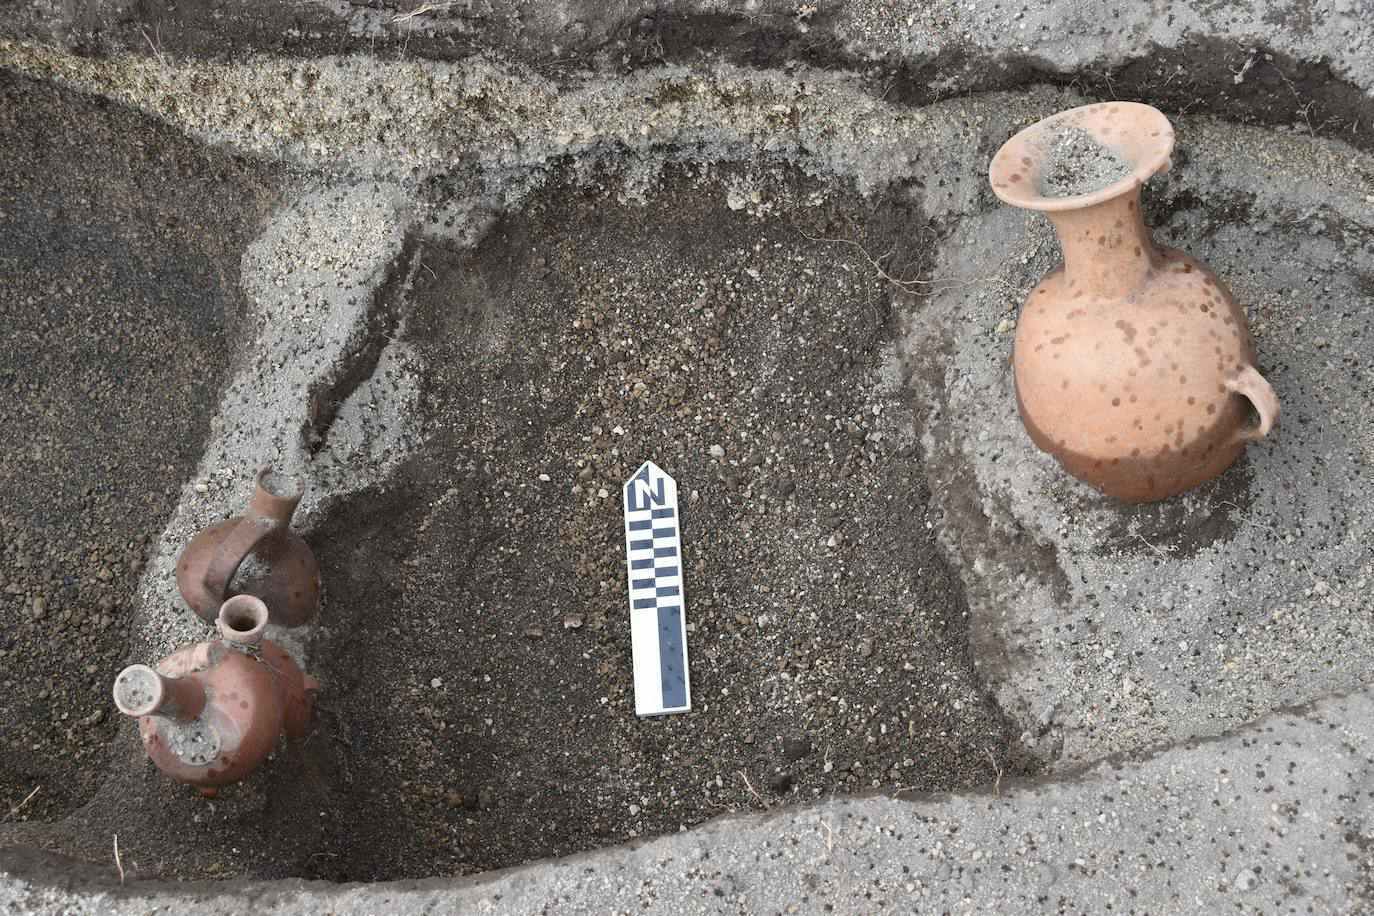 آنها همچنین aríbalos را پیدا کردند ، که قبلا به عنوان "ماکا" یا "puyñun" شناخته می شد و قبلا برای سرو چیچا ، یک نوشیدنی سنتی استفاده می شد (EFE / Byron Ortiz / Malaló Project Archaeological - Salatilín).